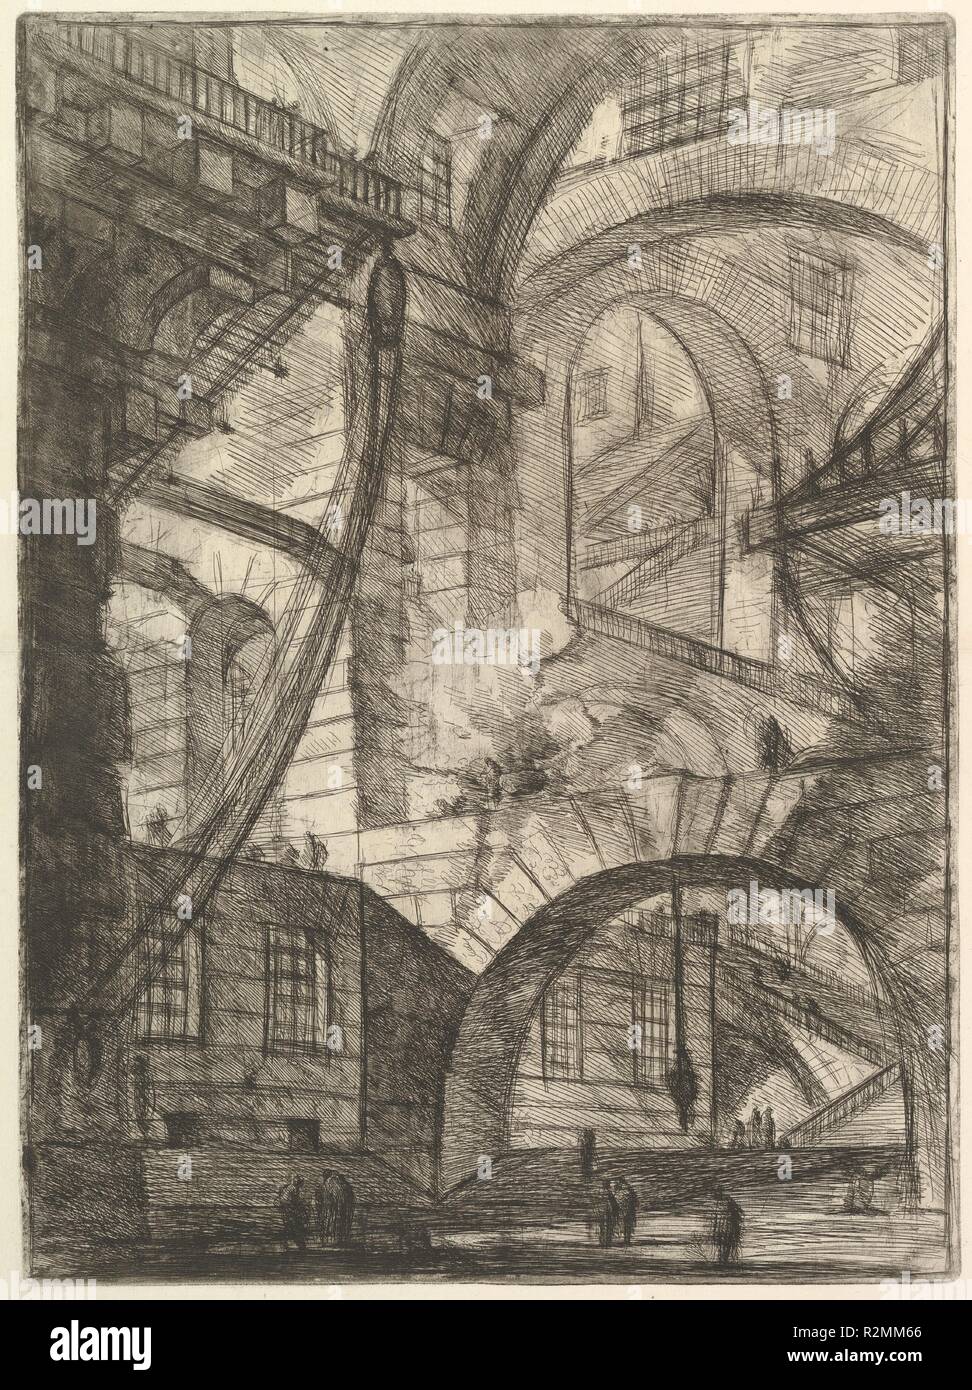 The Smoking Fire, from Carceri d'invenzione (Imaginary Prisons). Artist: Giovanni Battista Piranesi (Italian, Mogliano Veneto 1720-1778 Rome). Dimensions: Sheet: 25 x 19 1/2 in. (63.5 x 49.5 cm)  Sheet: 21 1/4 x 15 11/16 in. (54 x 39.8 cm). Publisher: Giovanni Bouchard (French, ca. 1716-1795). Series/Portfolio: Carceri d'invenzione (Imaginary Prisons). Date: ca. 1749-50. Museum: Metropolitan Museum of Art, New York, USA. Stock Photo